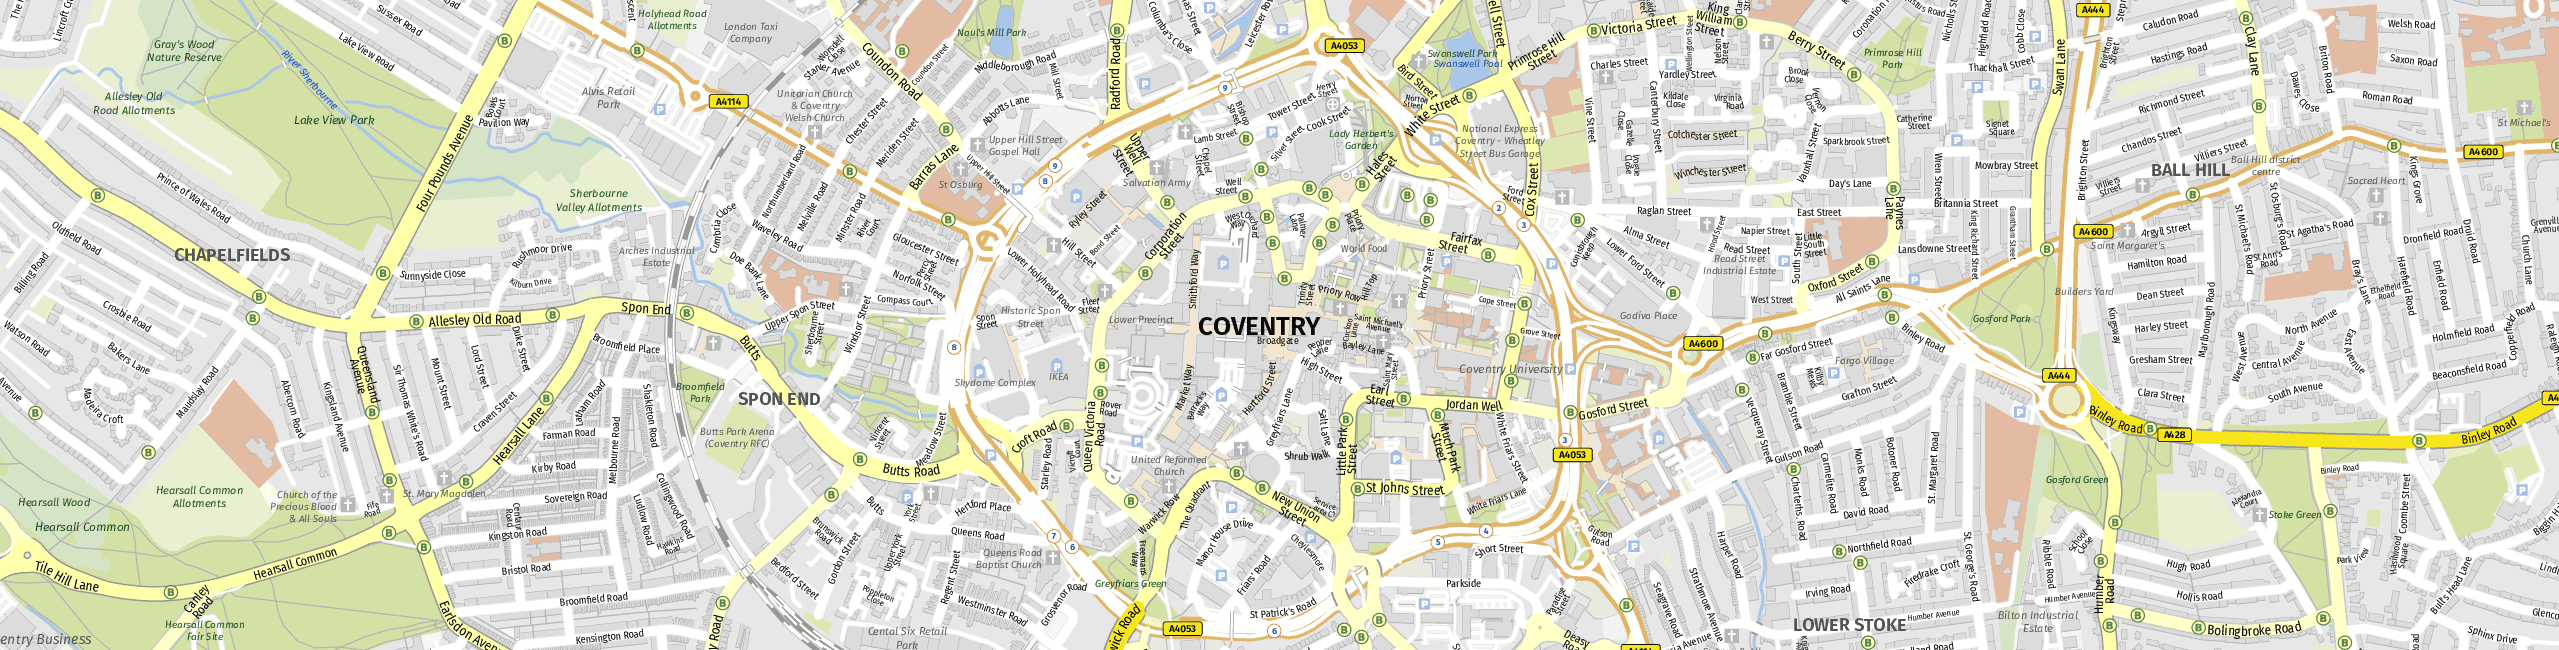 Stadtplan Coventry zum Downloaden.